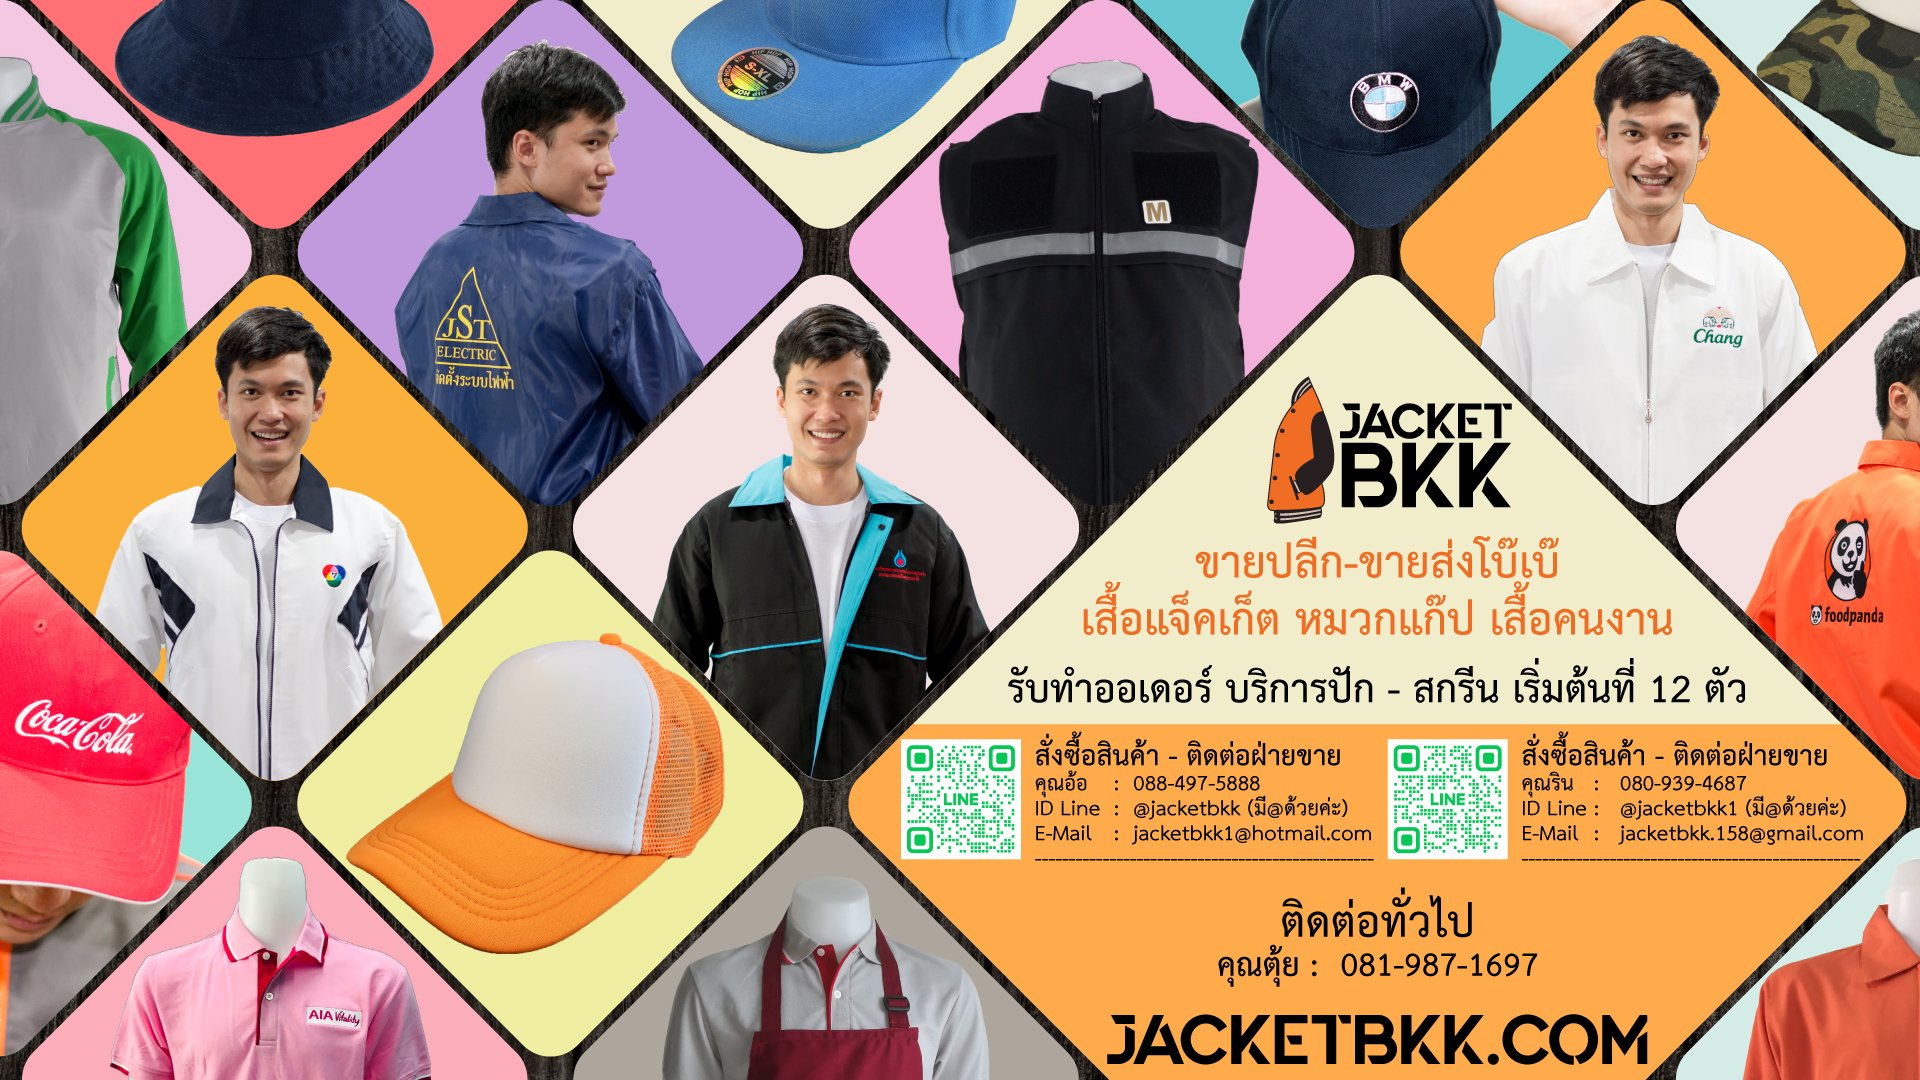 JACKETBKK ขายส่งเสื้อแจ็กเก็ต ราคาโรงงาน